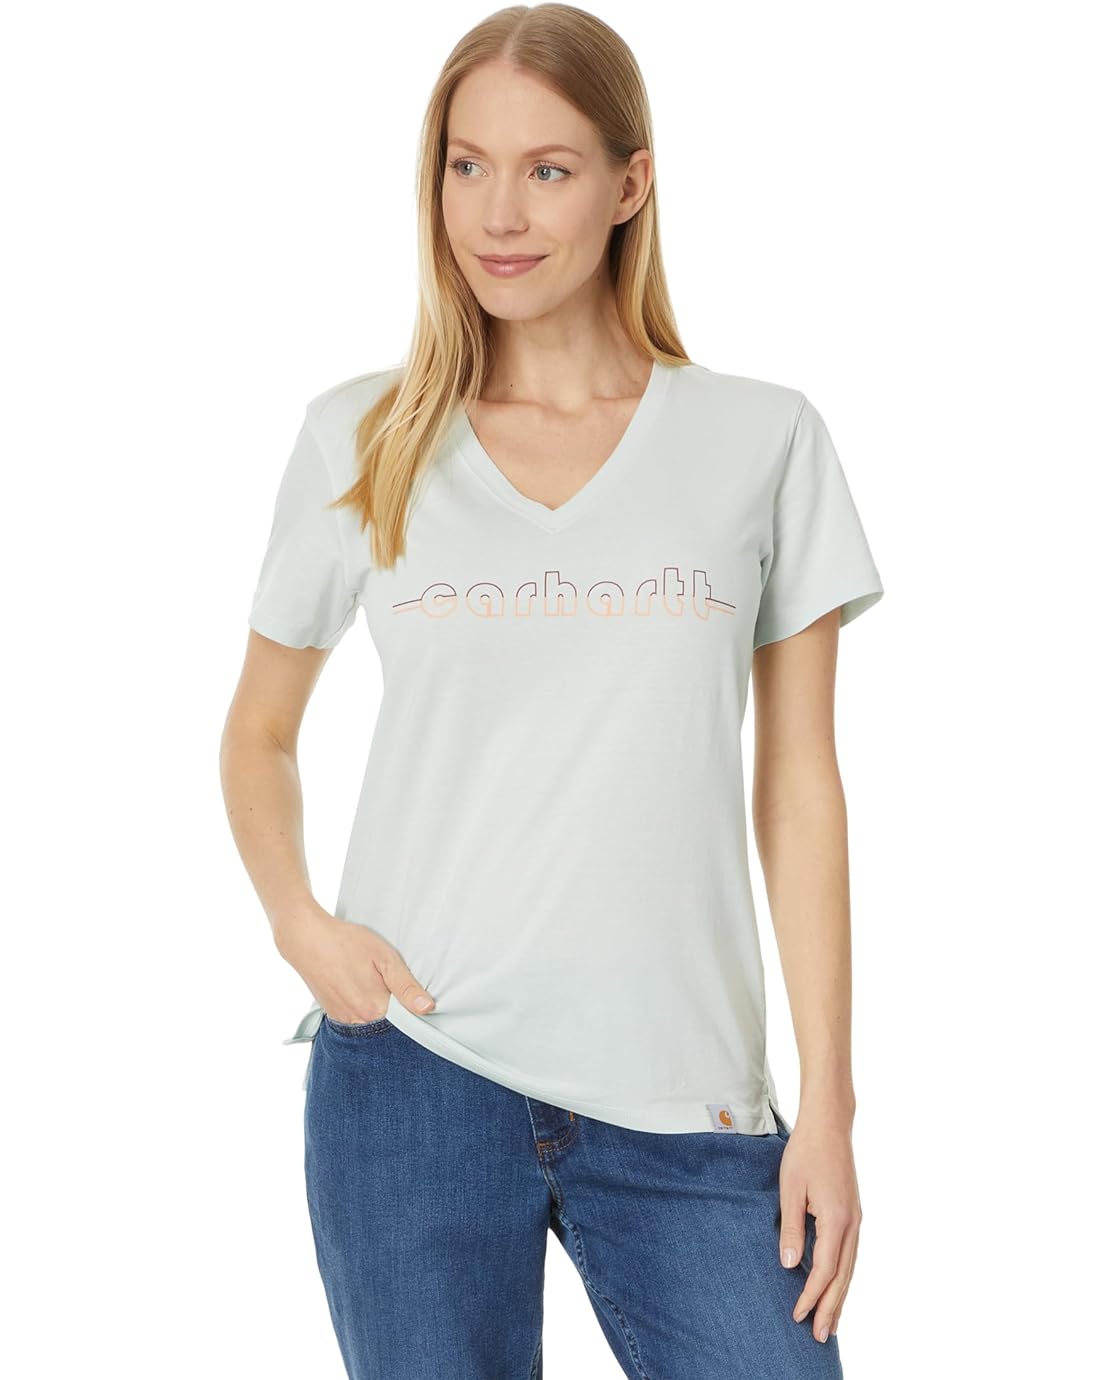 Carhartt Relaxed Fit Lightweight Short Sleeve Carhartt Graphic V-Neck T-Shirt